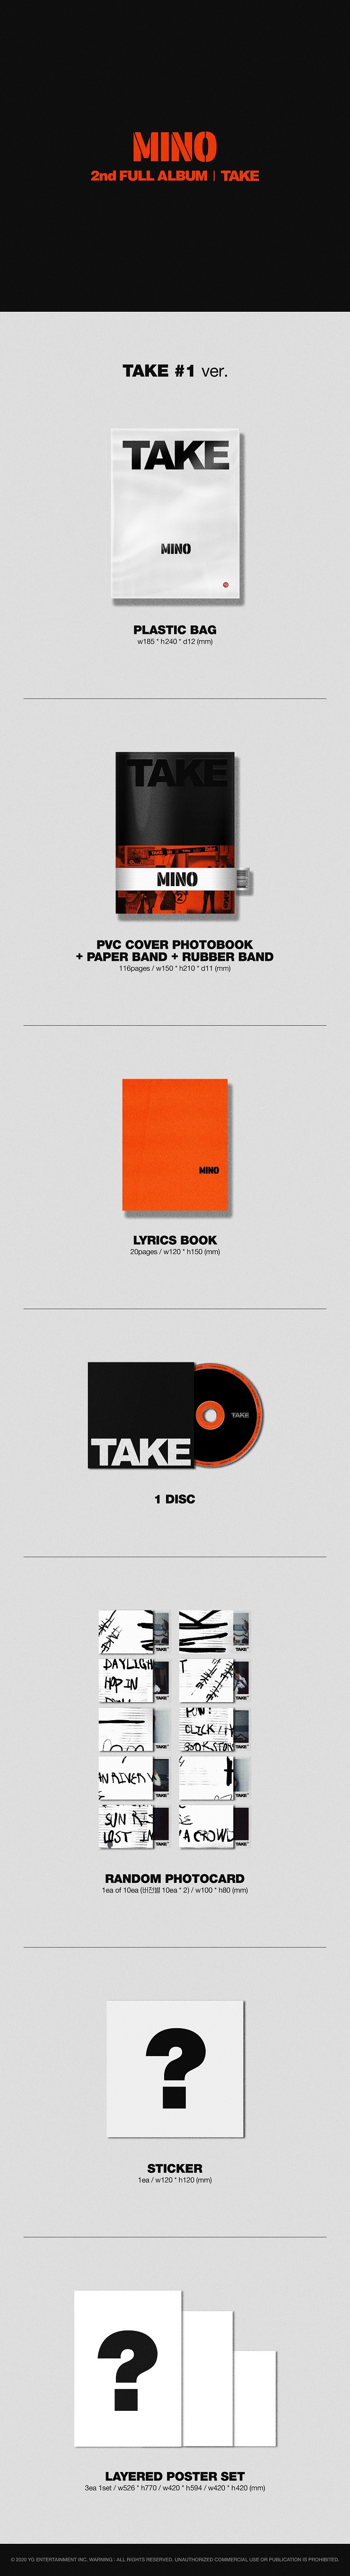 MINO - 2nd FULL ALBUM 'TAKE' [Take #1 Ver.]